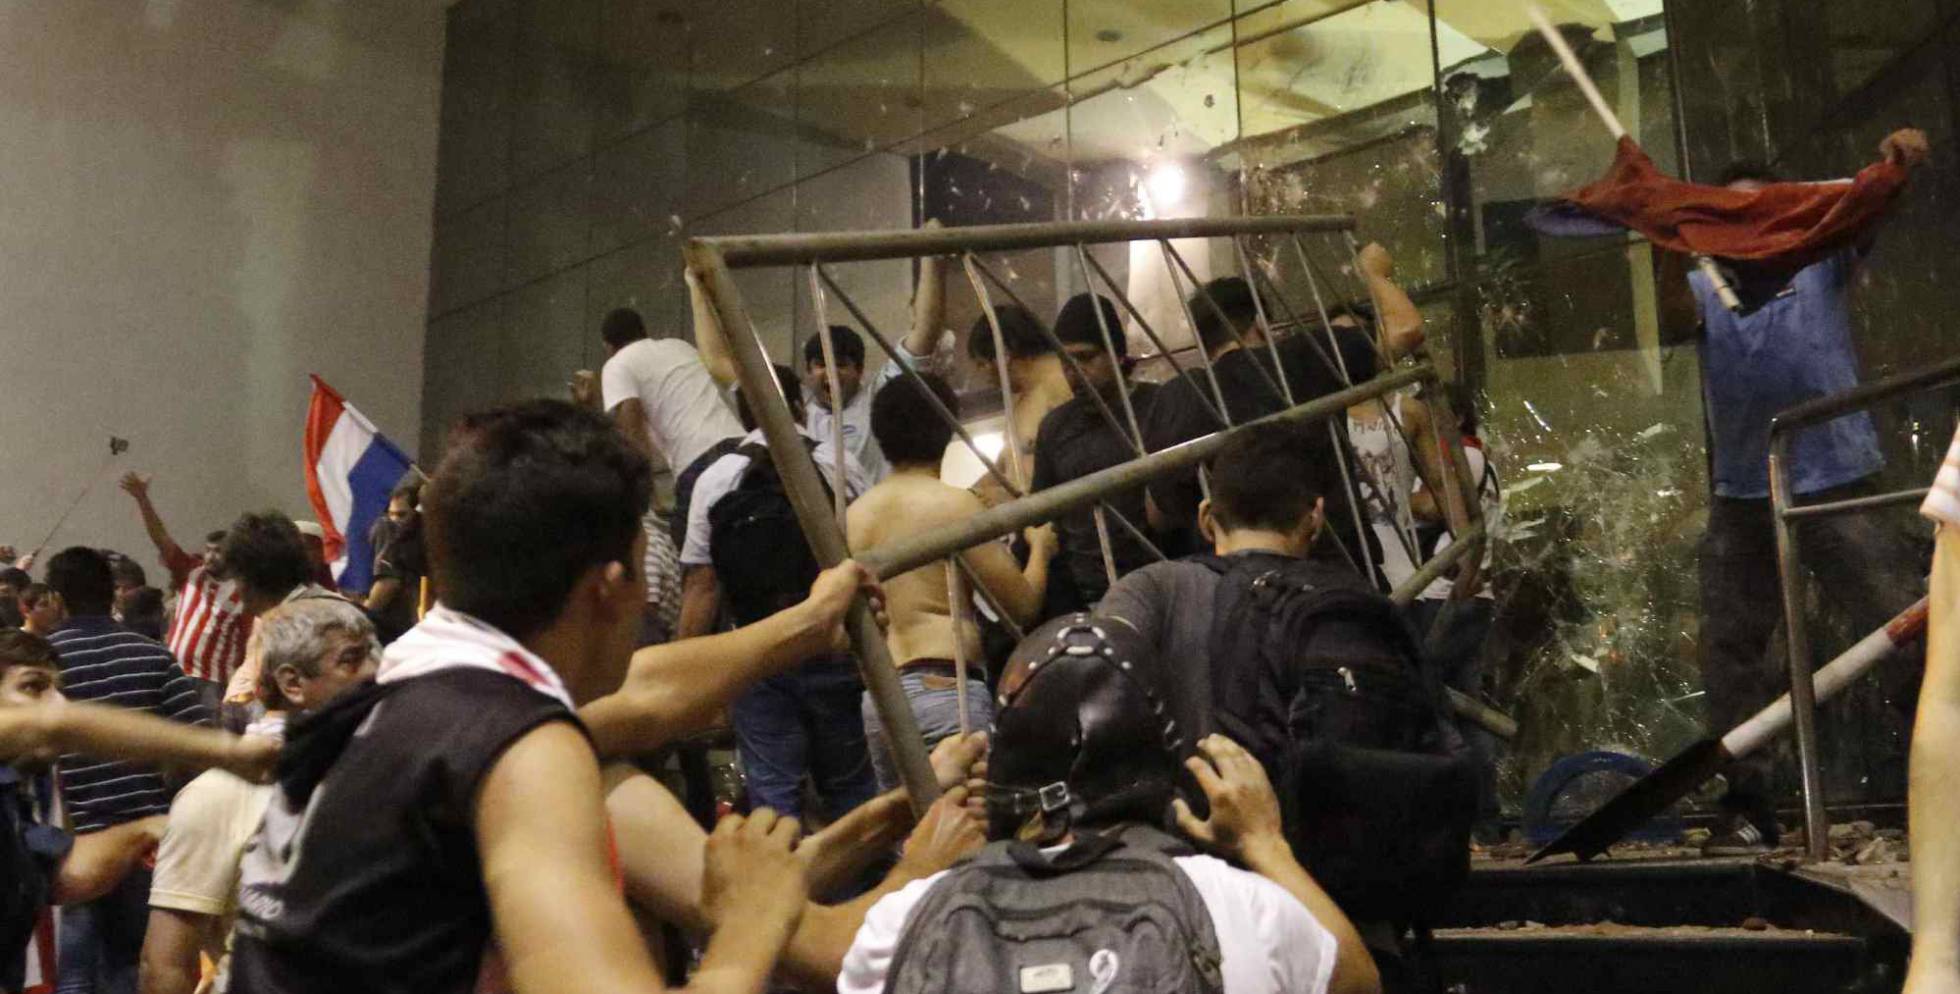 Um gurpo de manifestantes invadem o Congresso em Assunção.